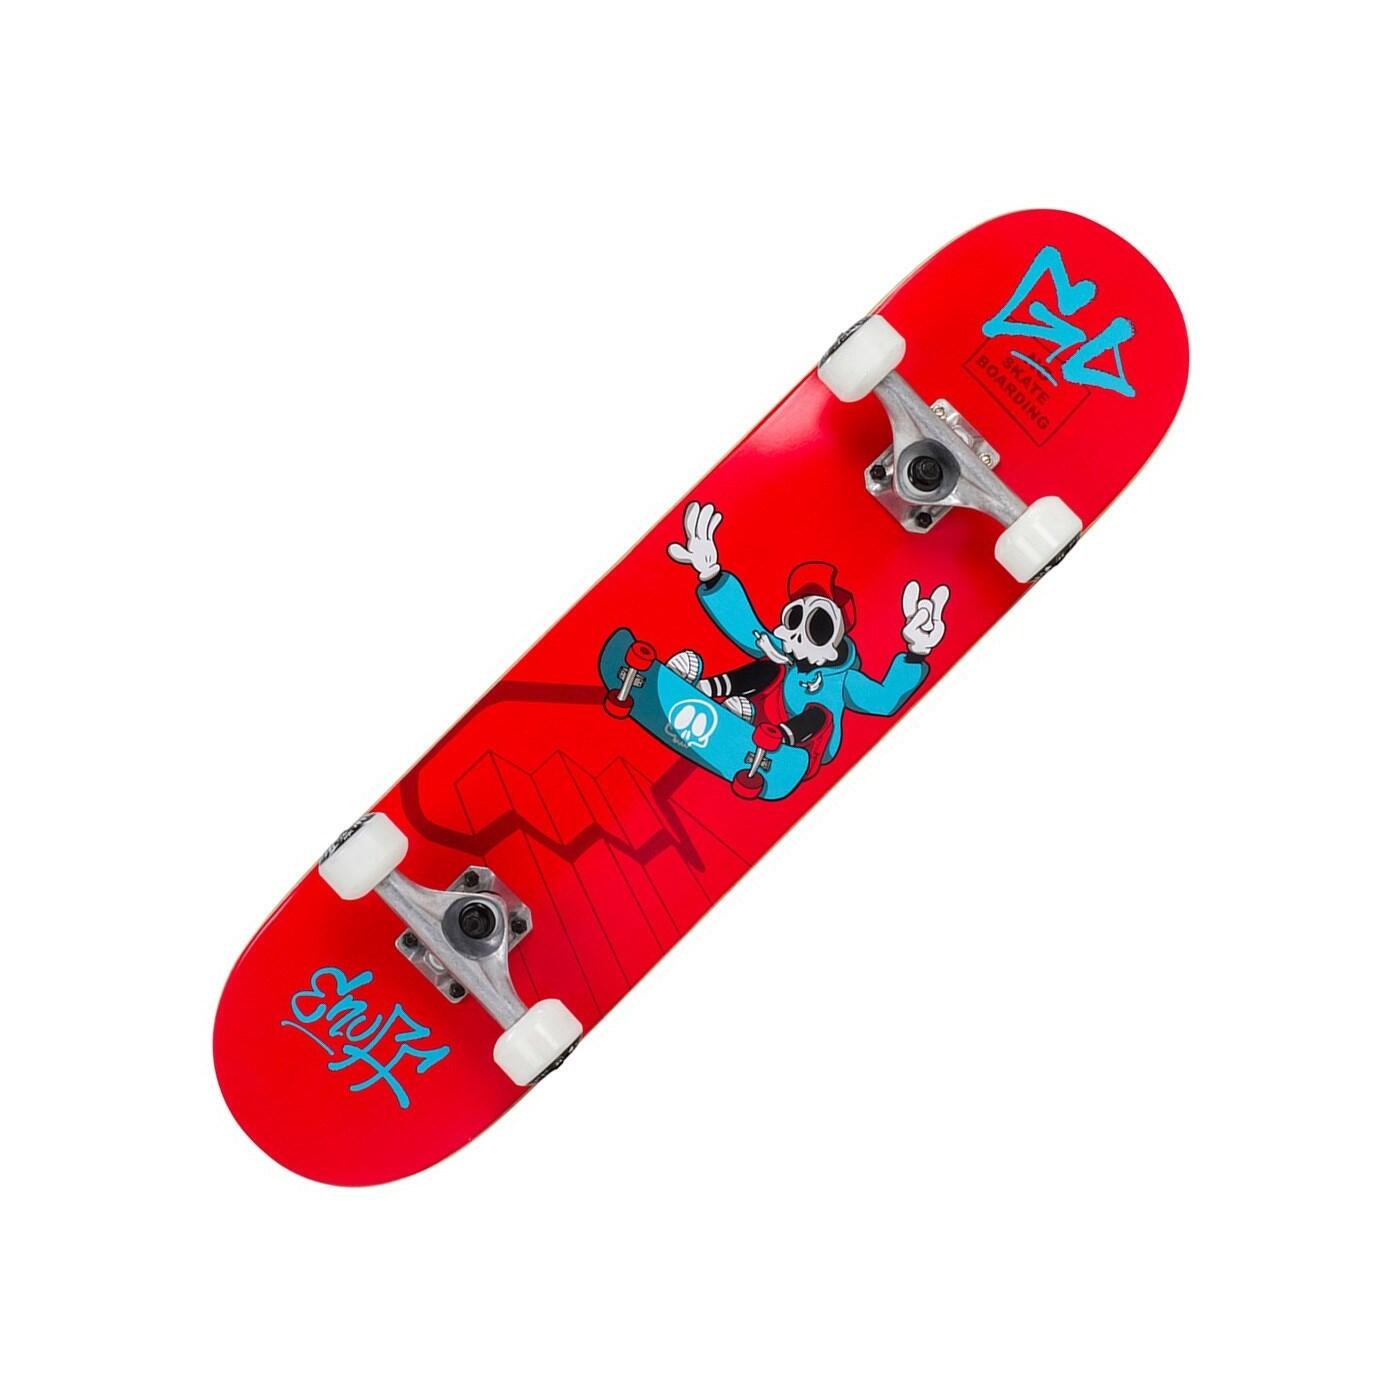 ENUFF SKATEBOARDS Skully Red 7.25inch Mini Complete Skateboard